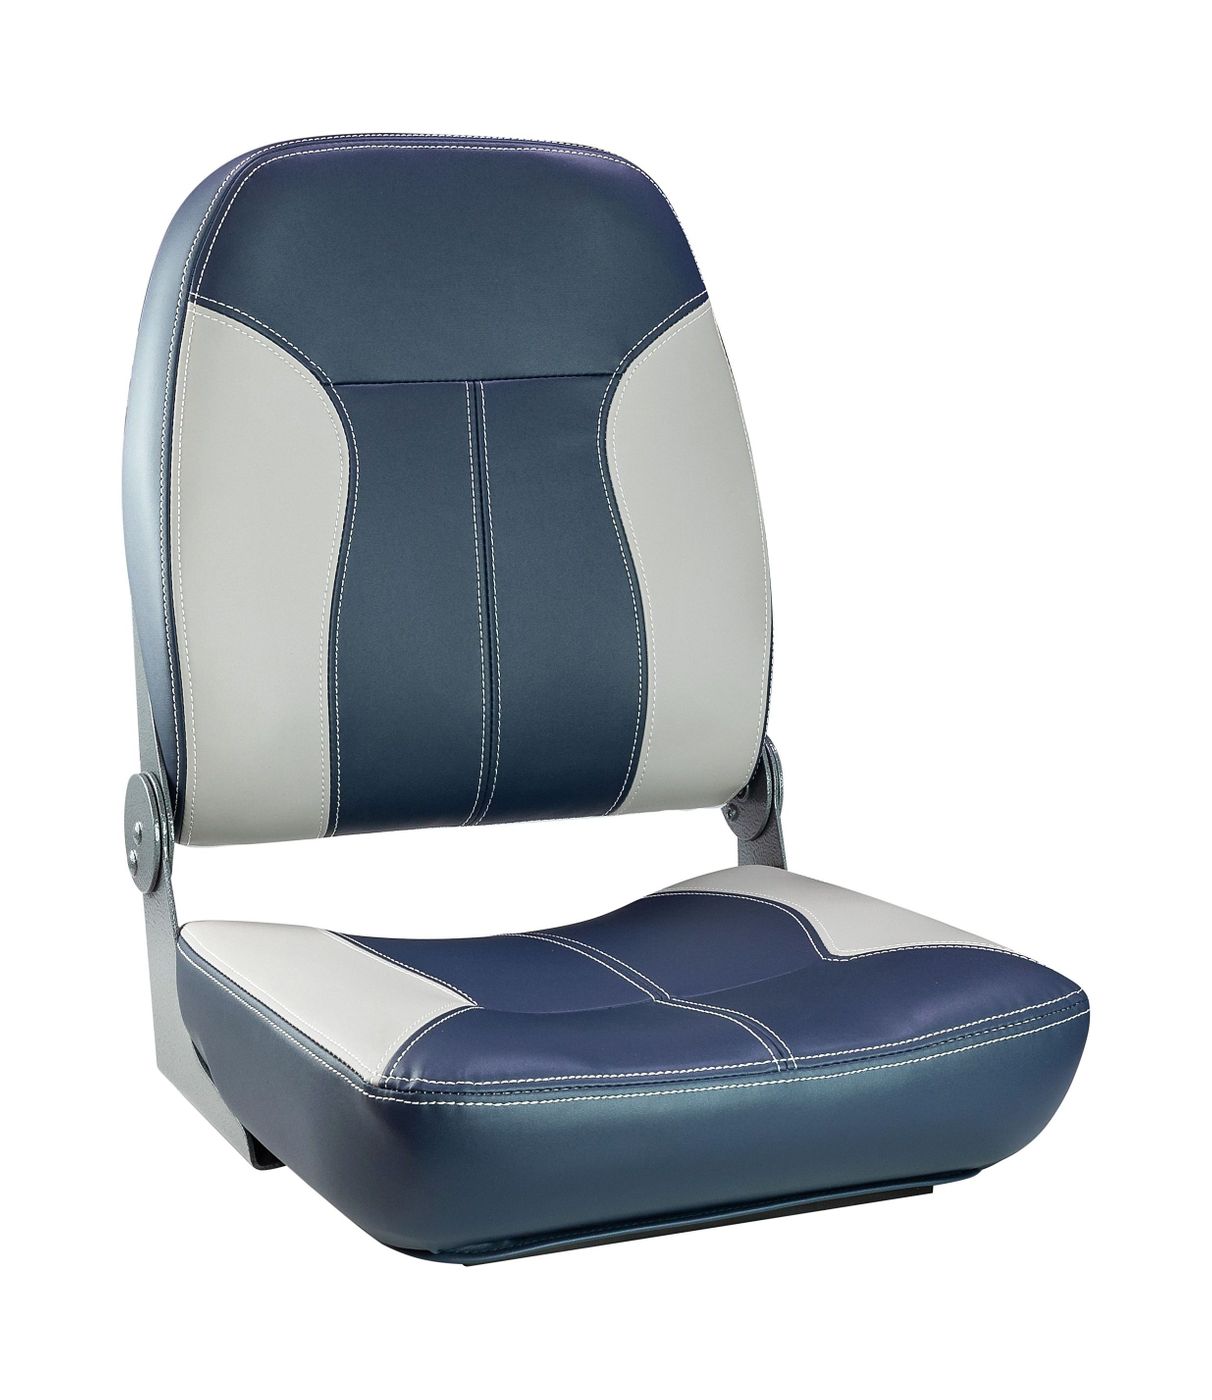 Кресло складное мягкое SPORT с высокой спинкой, синий/серый 1040513 кресло мягкое deluxe sport с откидным валиком белый синий 1043251